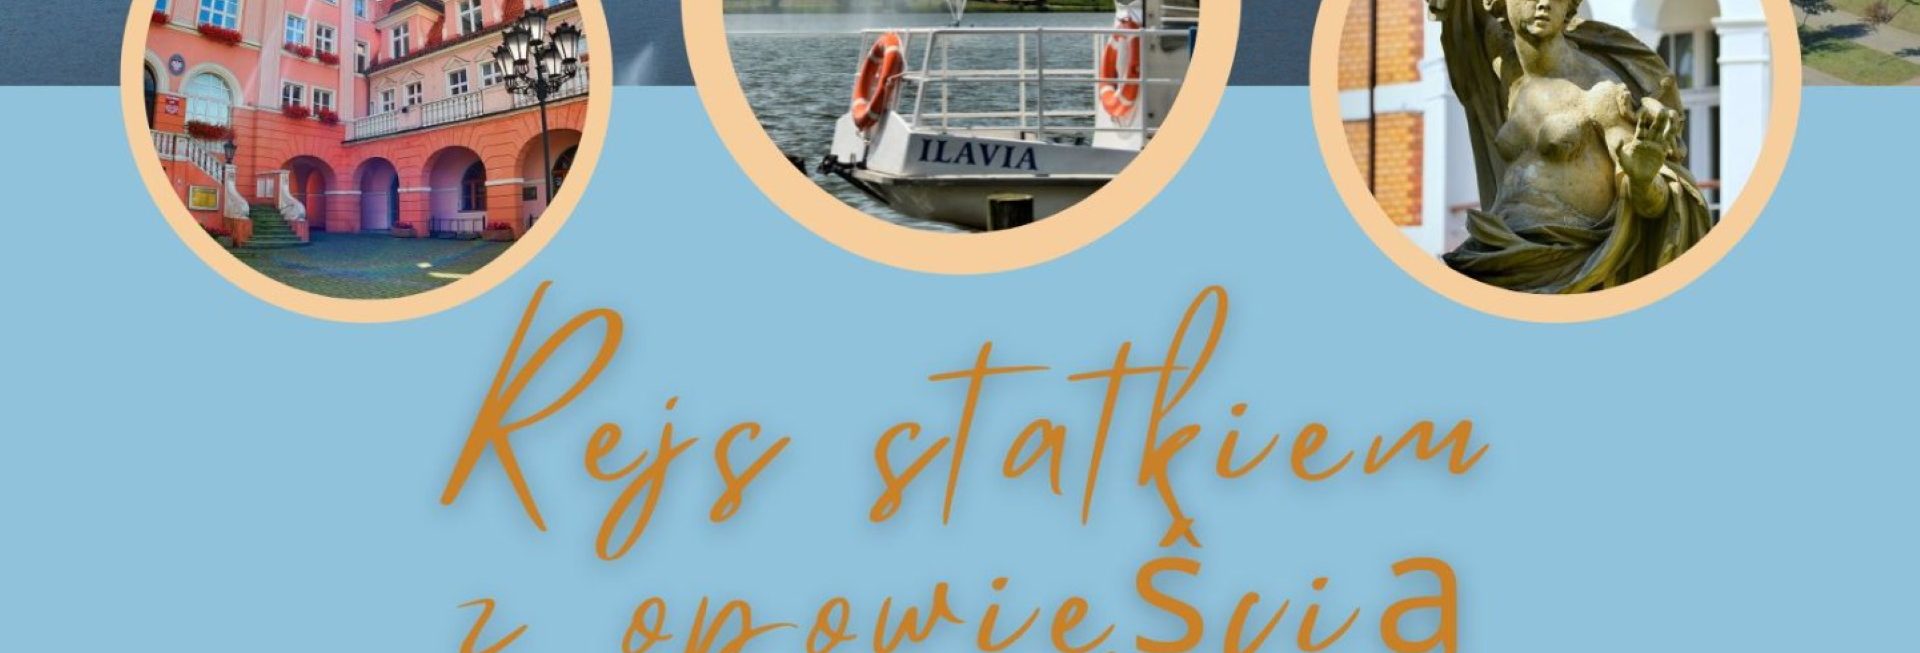 Plakat graficzny zapraszający do Iławy na Rejs statkiem z opowieścią w tle Iława 2022.